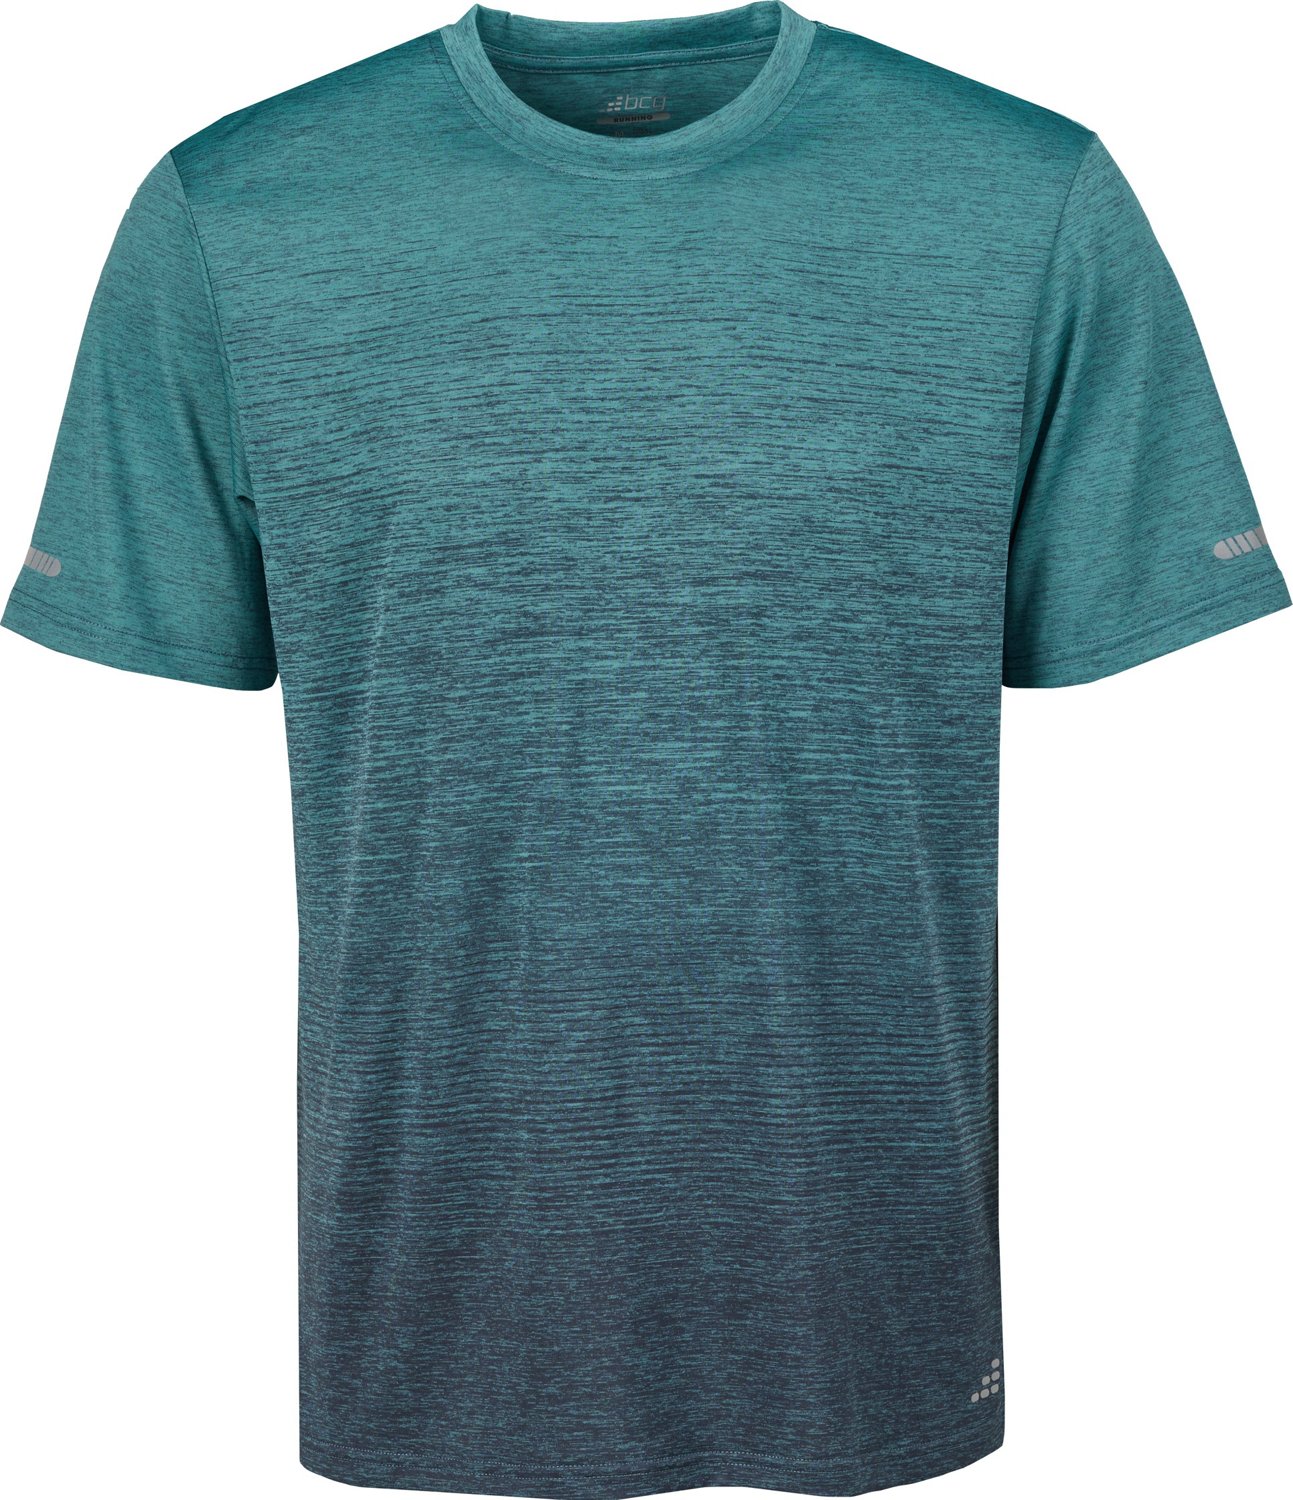 Baseball bat ball T shirt Design Sports Shirt design for Men's & Women's T  shirts